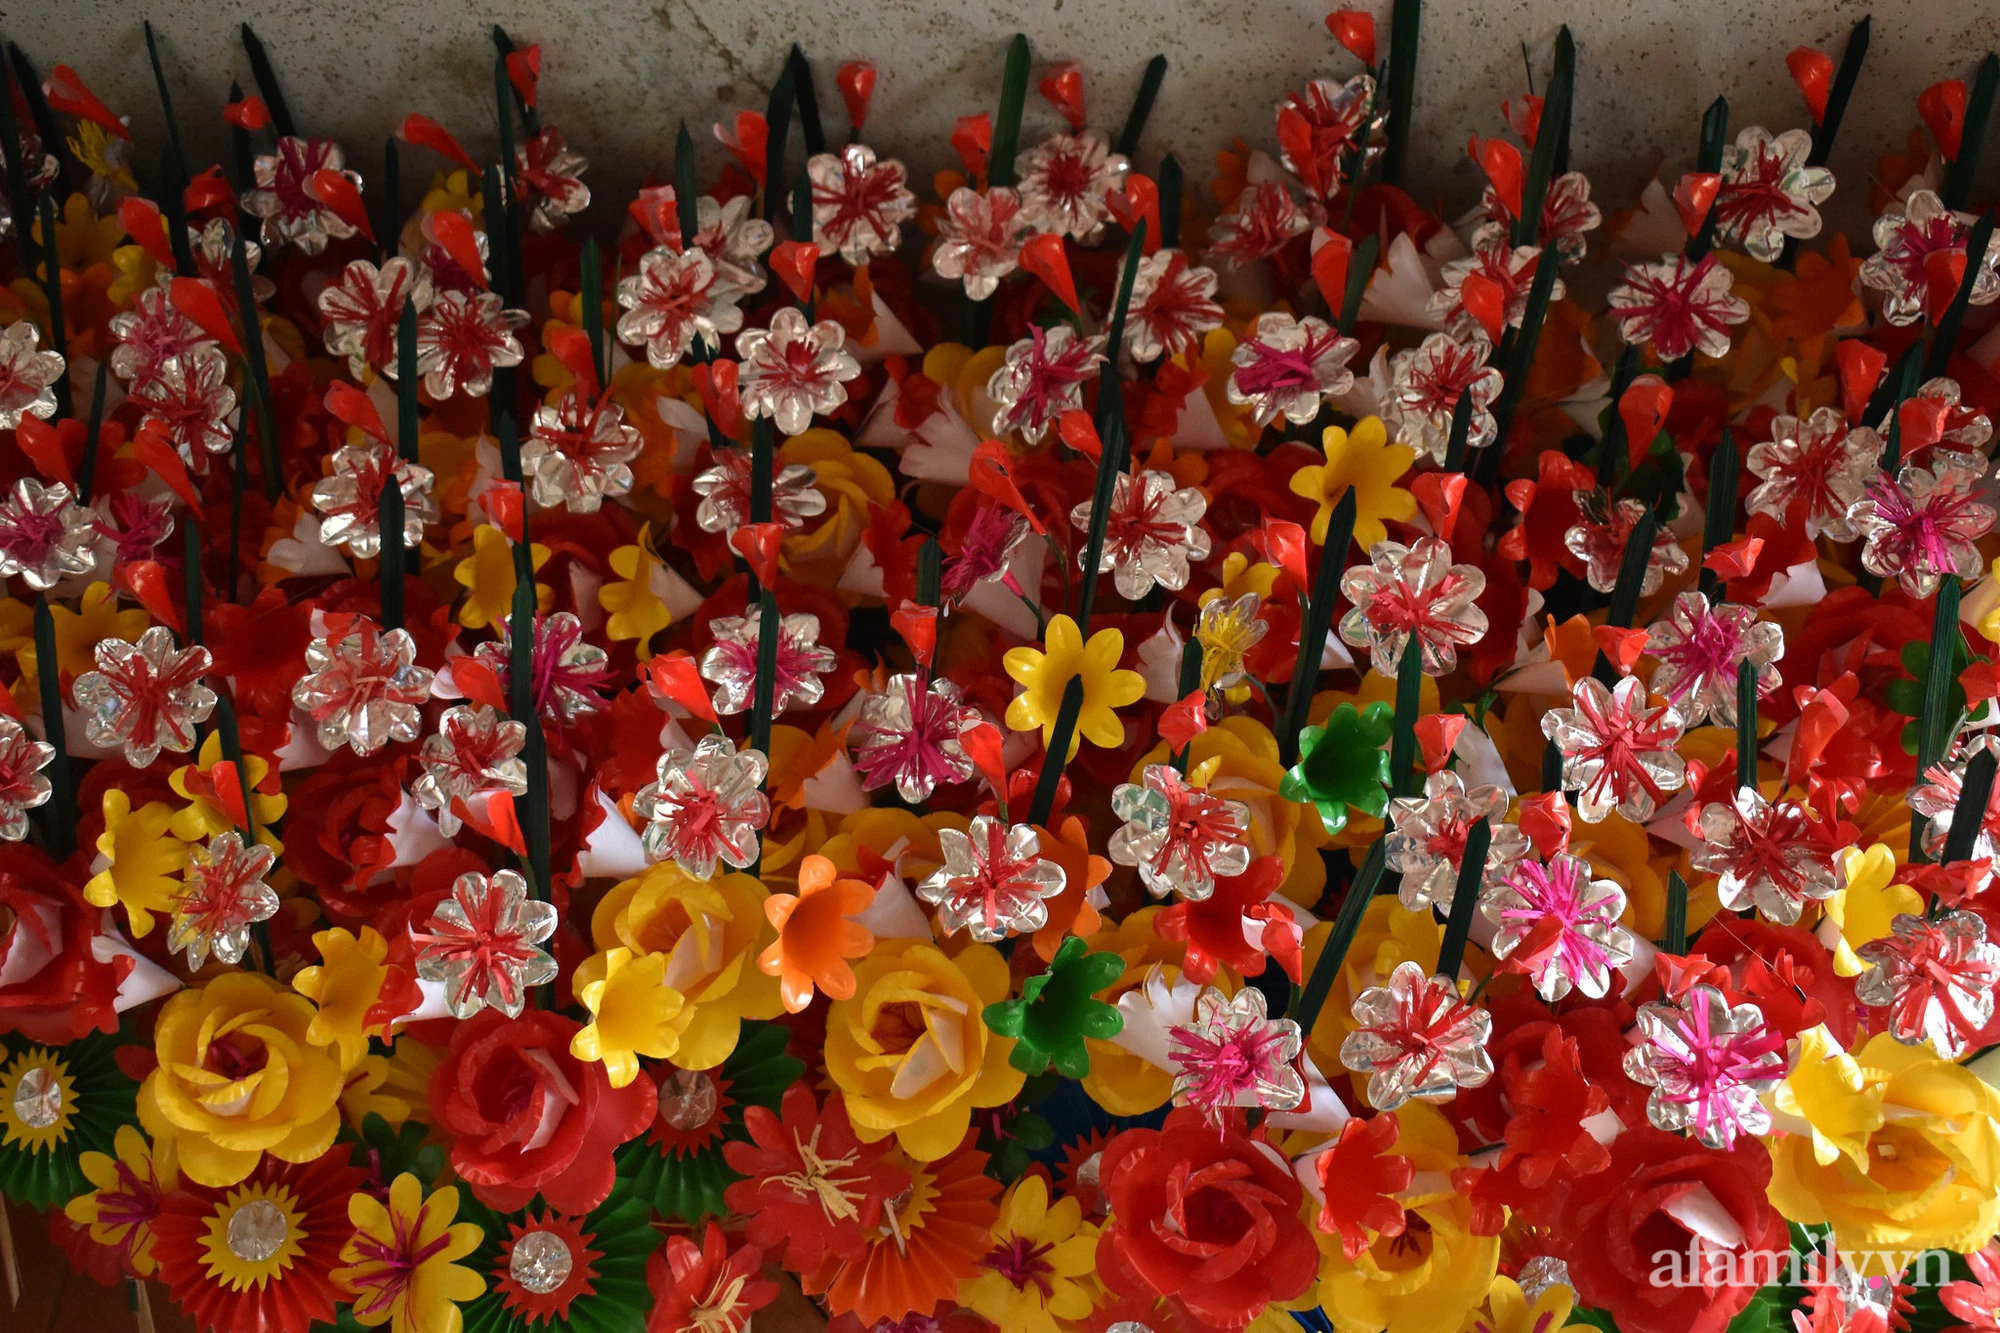 Cứ đến Tết làng hoa giấy Thanh Tiên lại rực rỡ sắc màu - nét đẹp tâm linh tồn tại hơn 300 năm ở Huế - Ảnh 3.